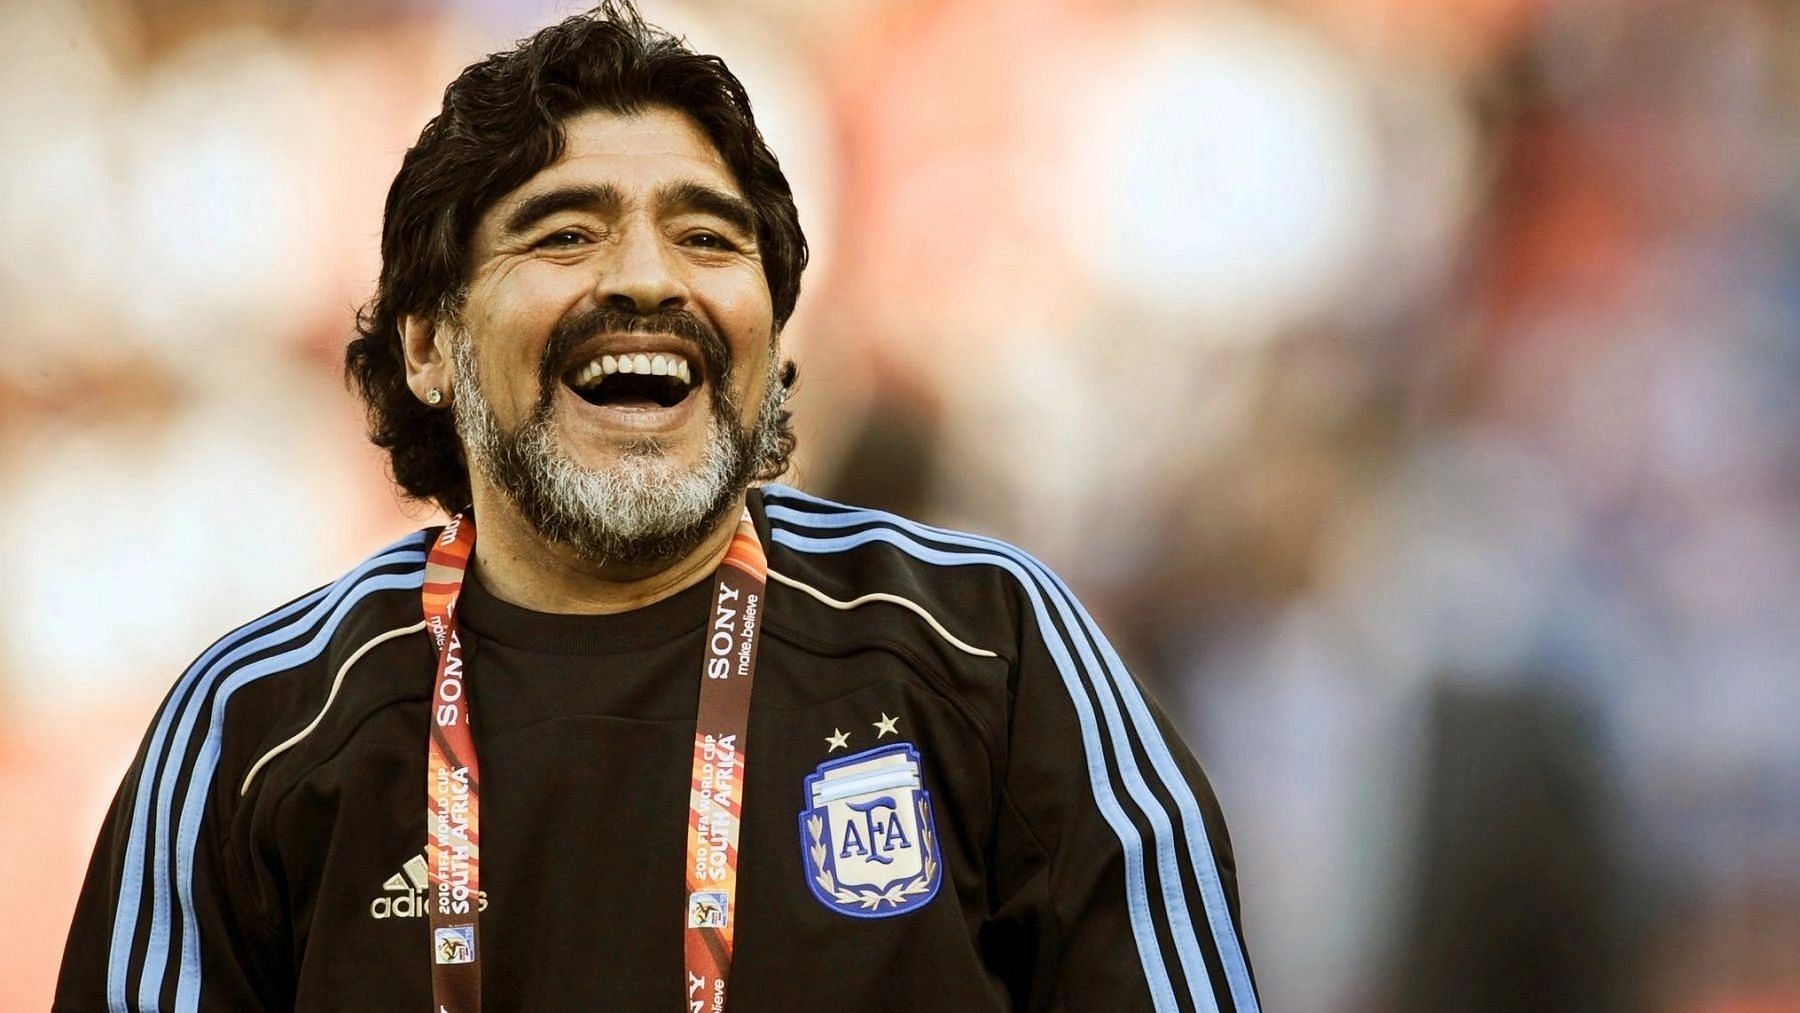 <div class="paragraphs"><p>Late Argentinean Footballer, Diego Armando Maradona</p></div>